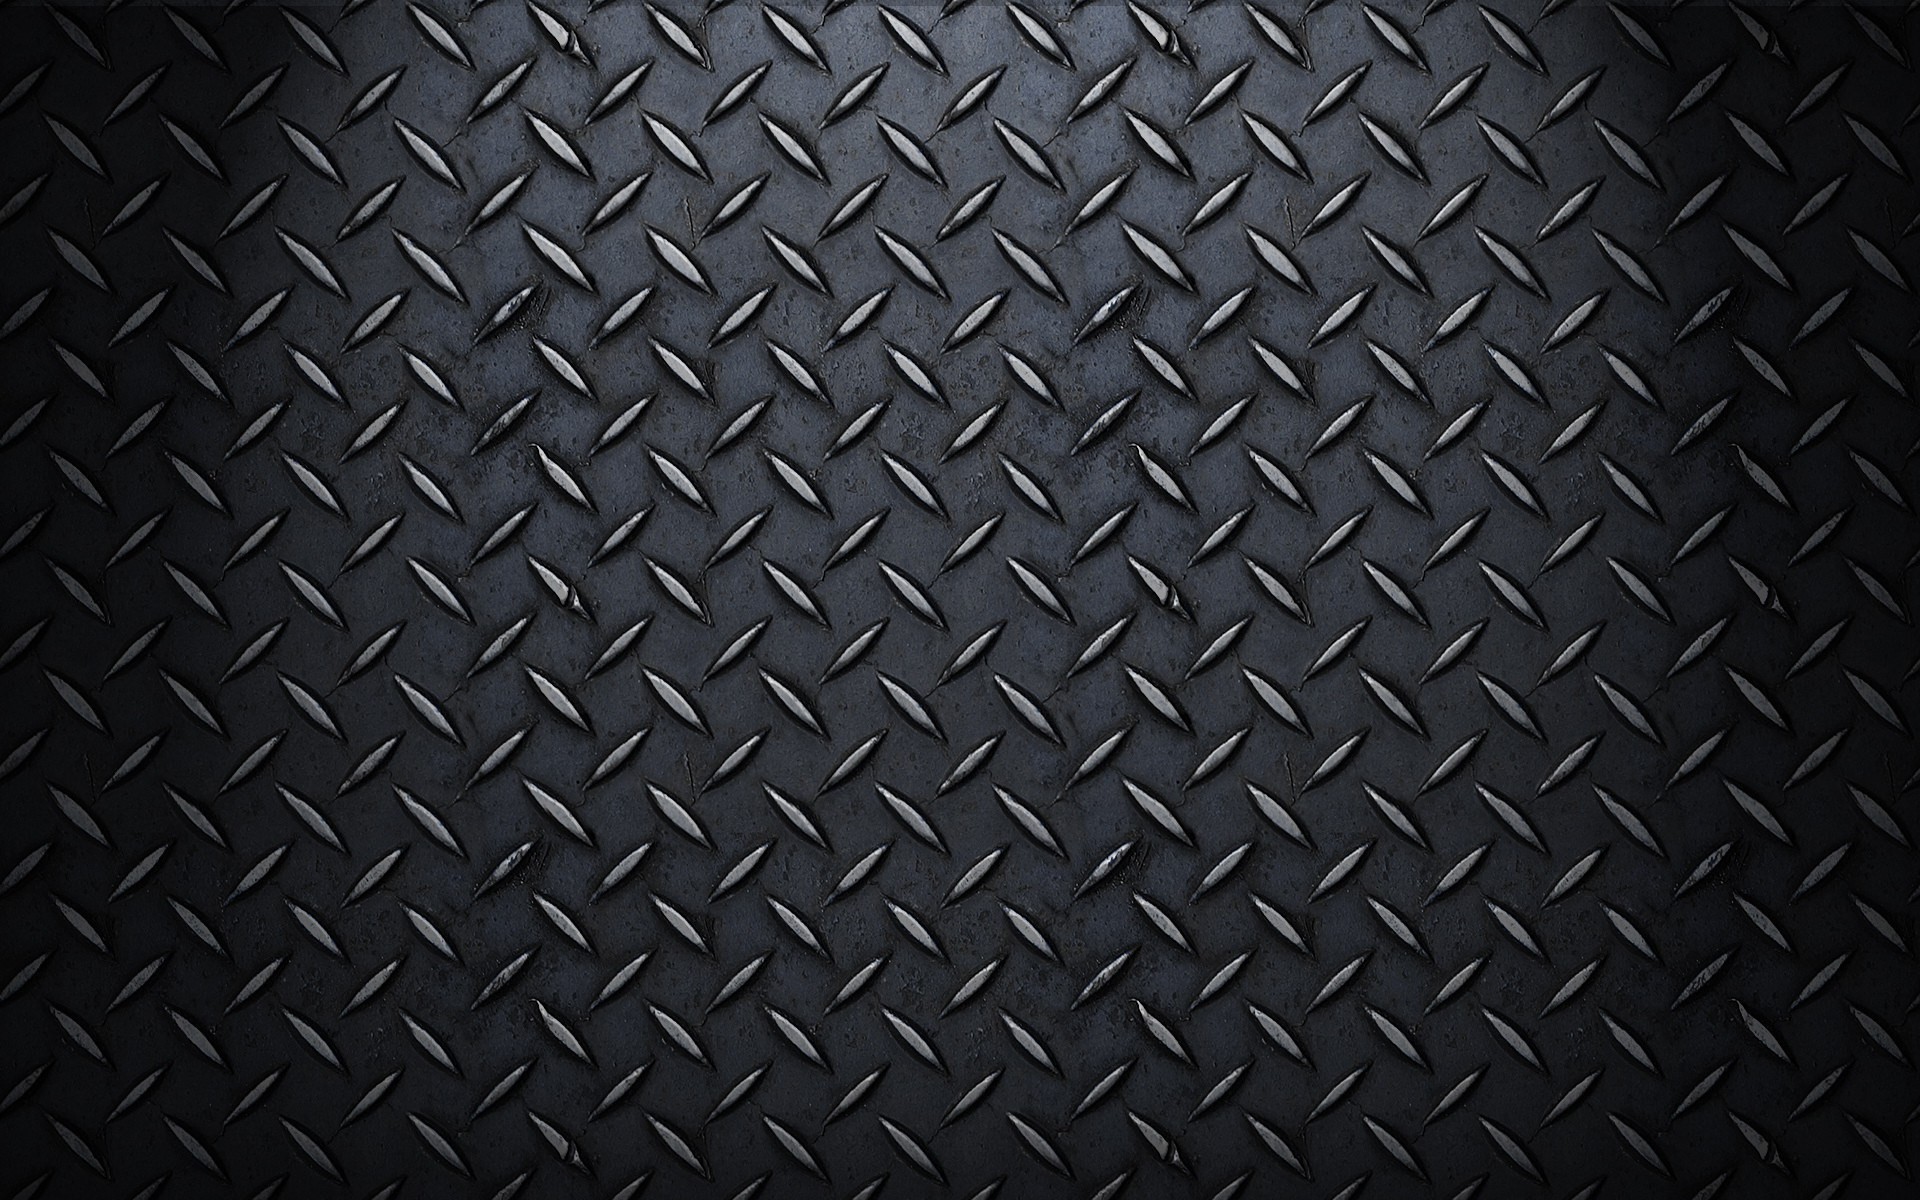 1920x1200 ... carbon fiber wallpaper for desktop background, 1920 x 1200 (561 kB